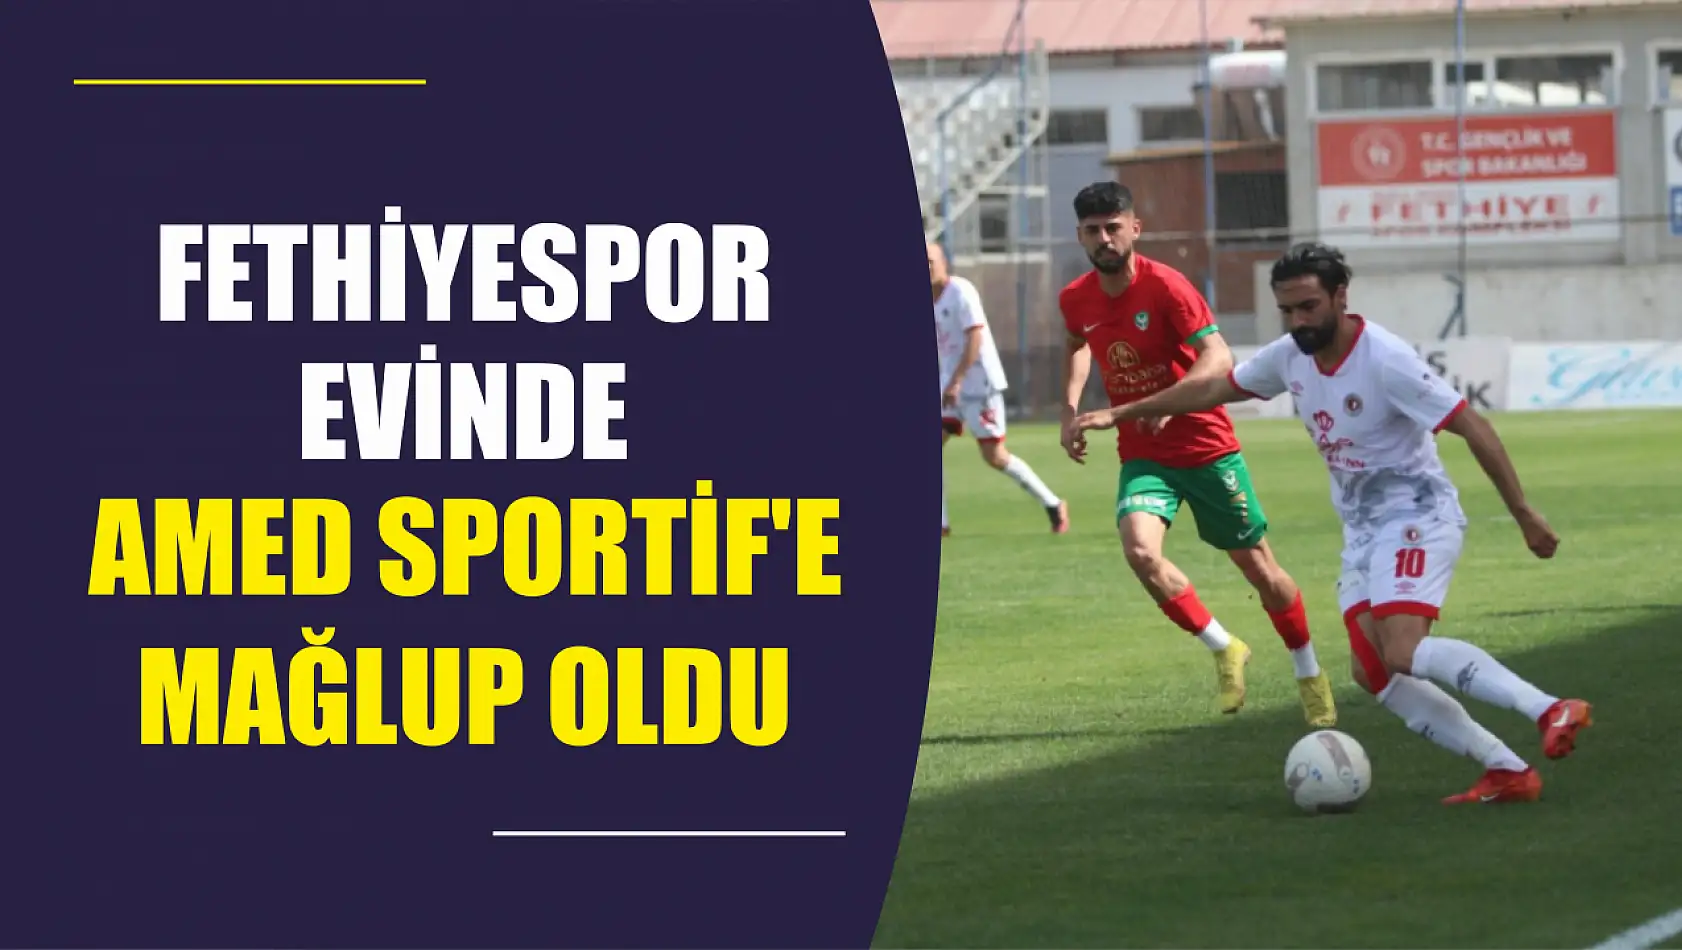 Fethiyespor evinde lider Amed Sportif'e mağlup oldu